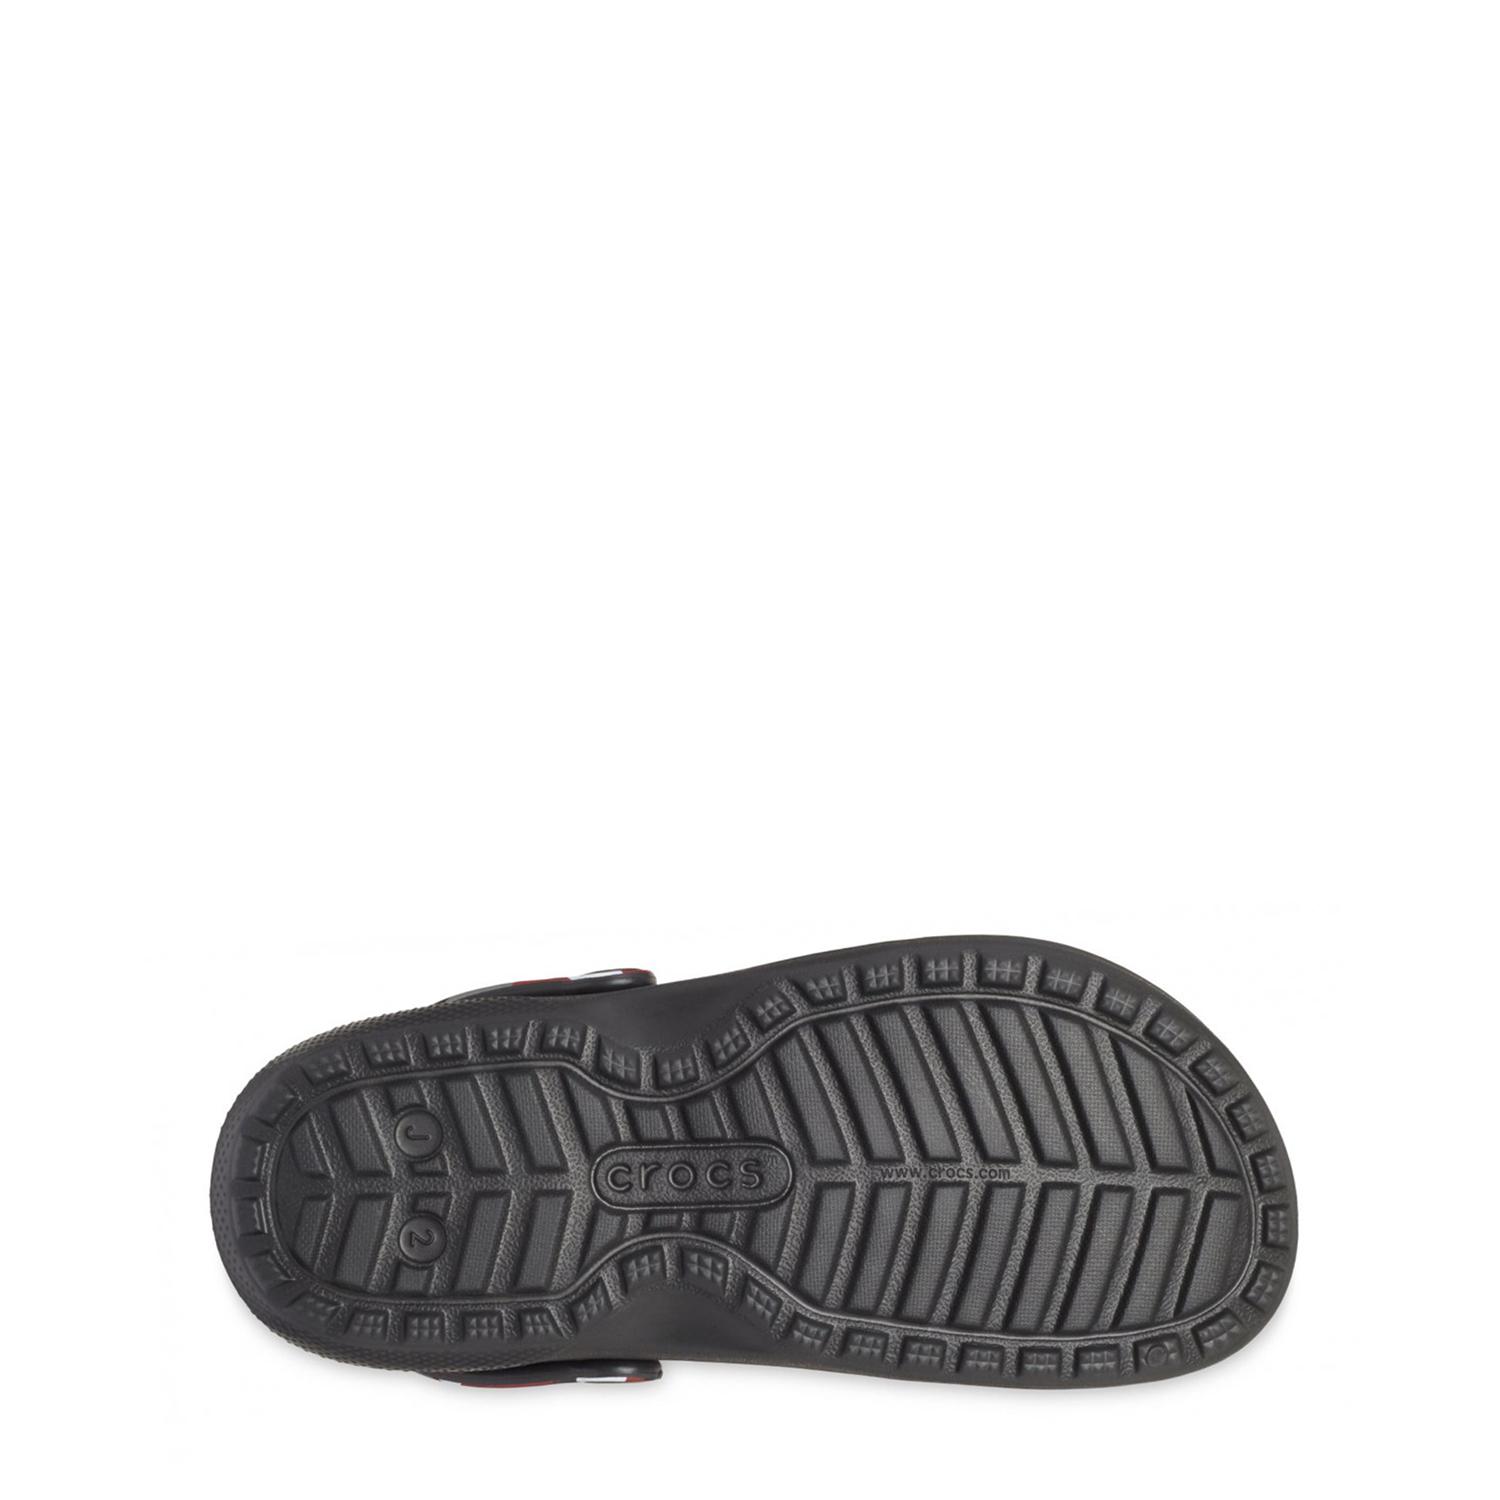 Crocs Classic Lined Camo Clog BLACK PEPPER 